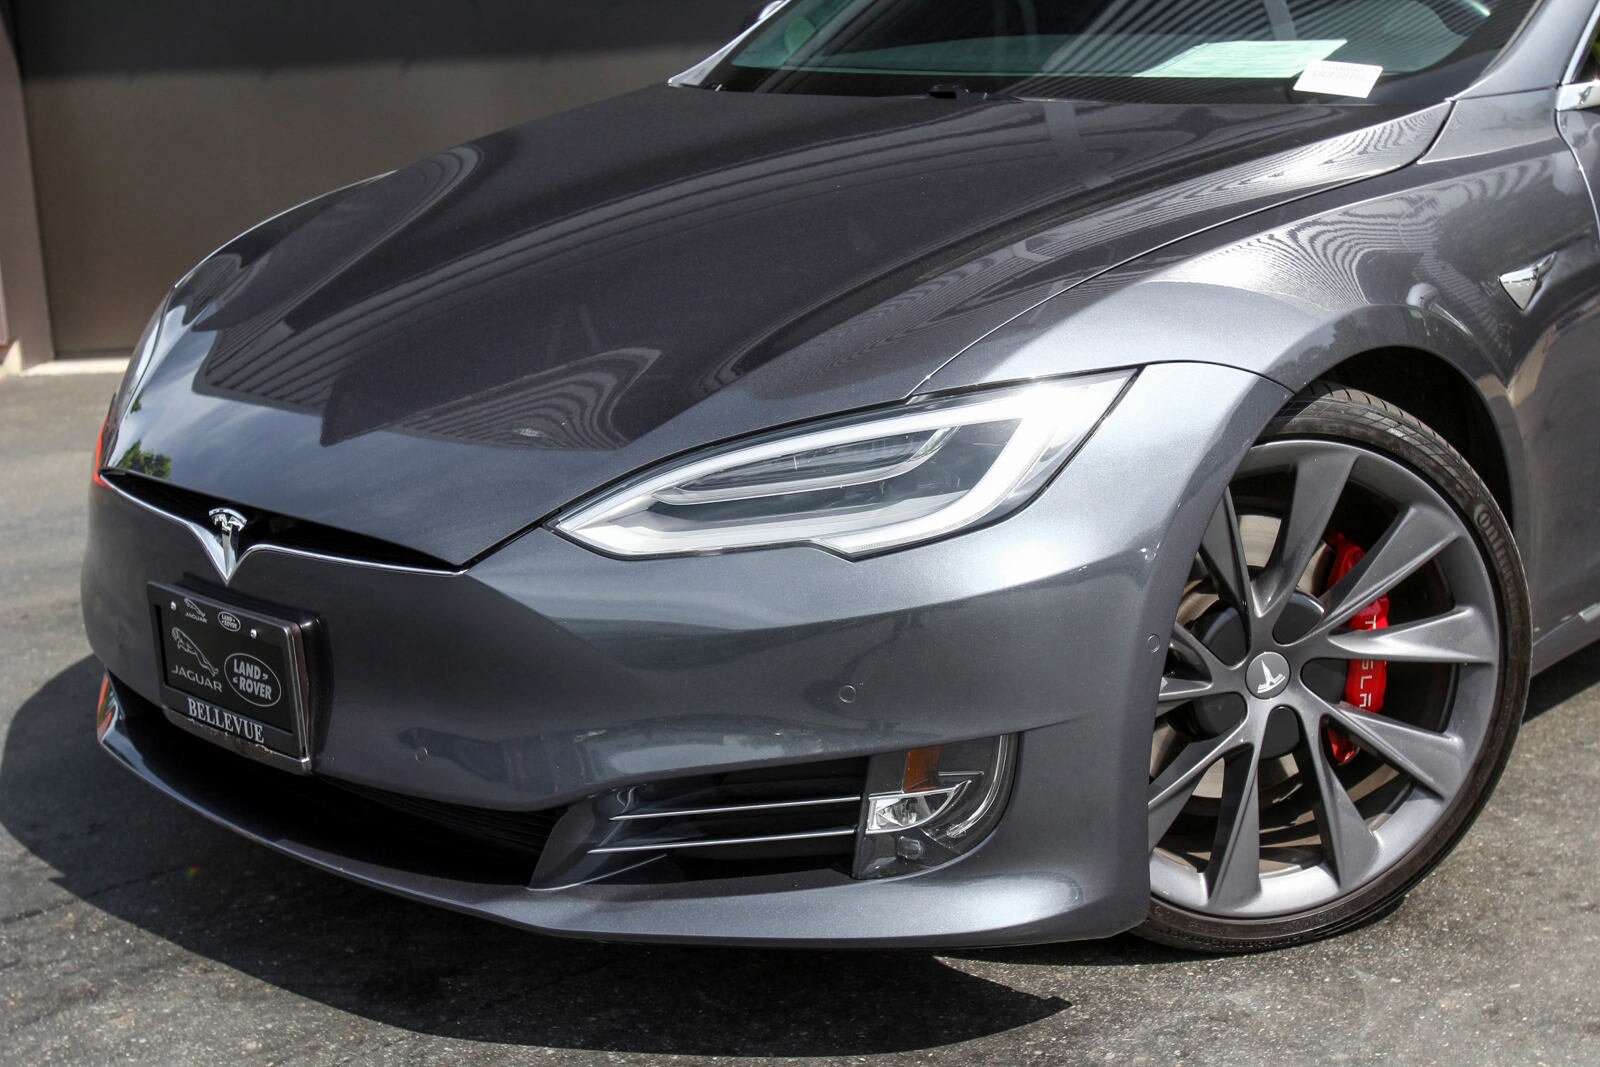 Used 2020 Tesla Model S Long Range Plus with VIN 5YJSA1E25LF379704 for sale in Bellevue, WA